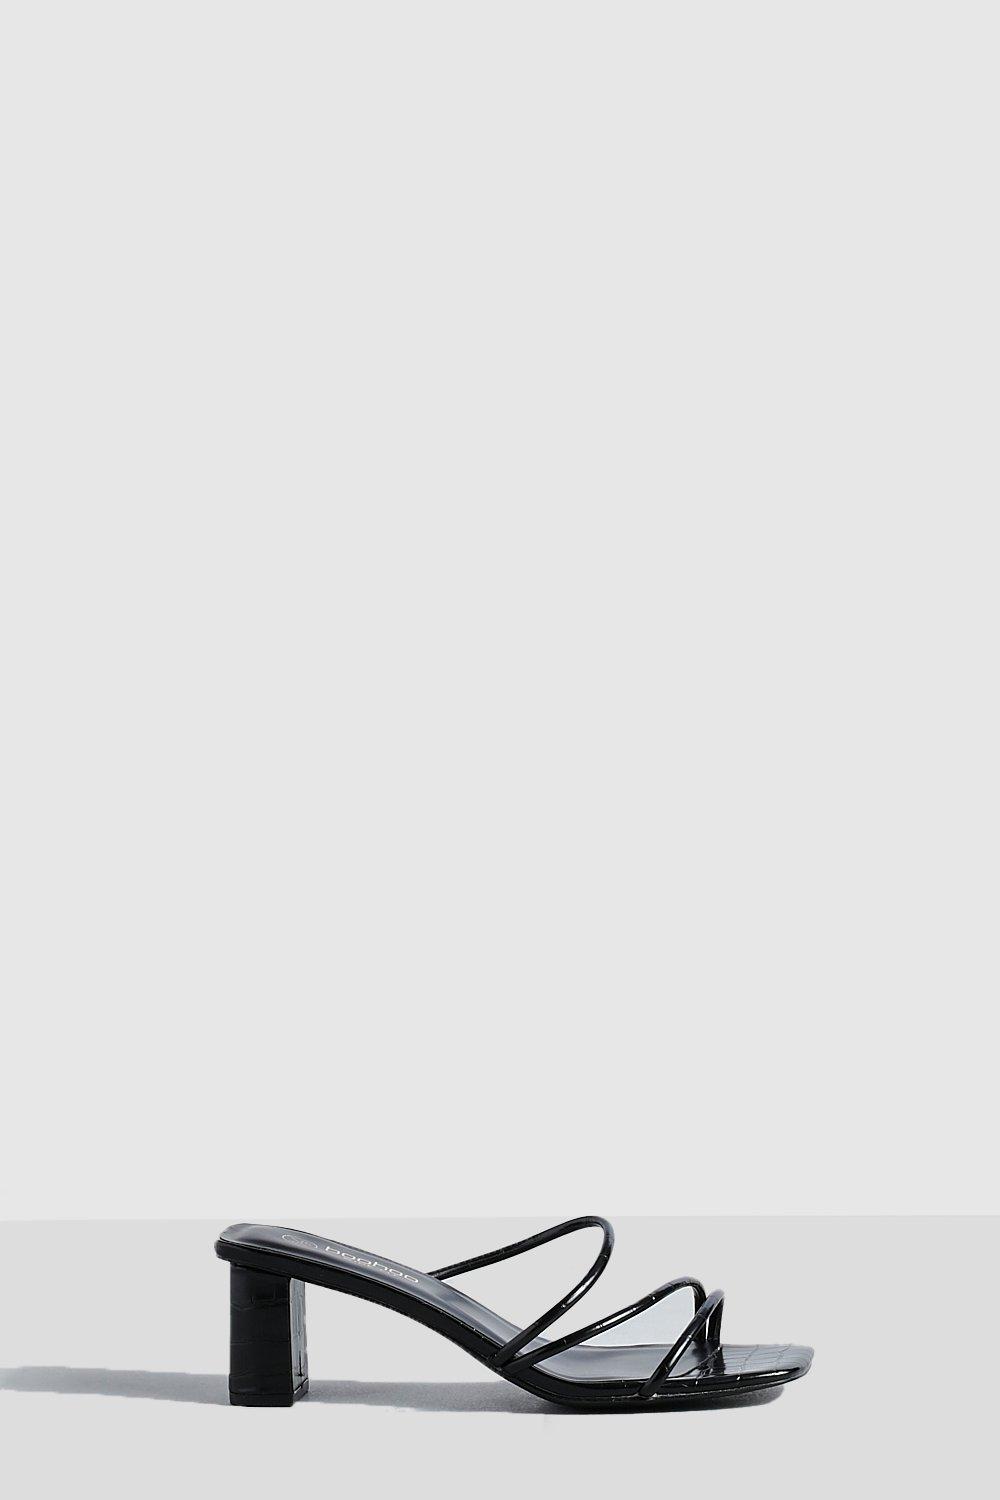 Image of Sandali Mules a calzata ampia con laccetti e tacco basso a blocco, Nero